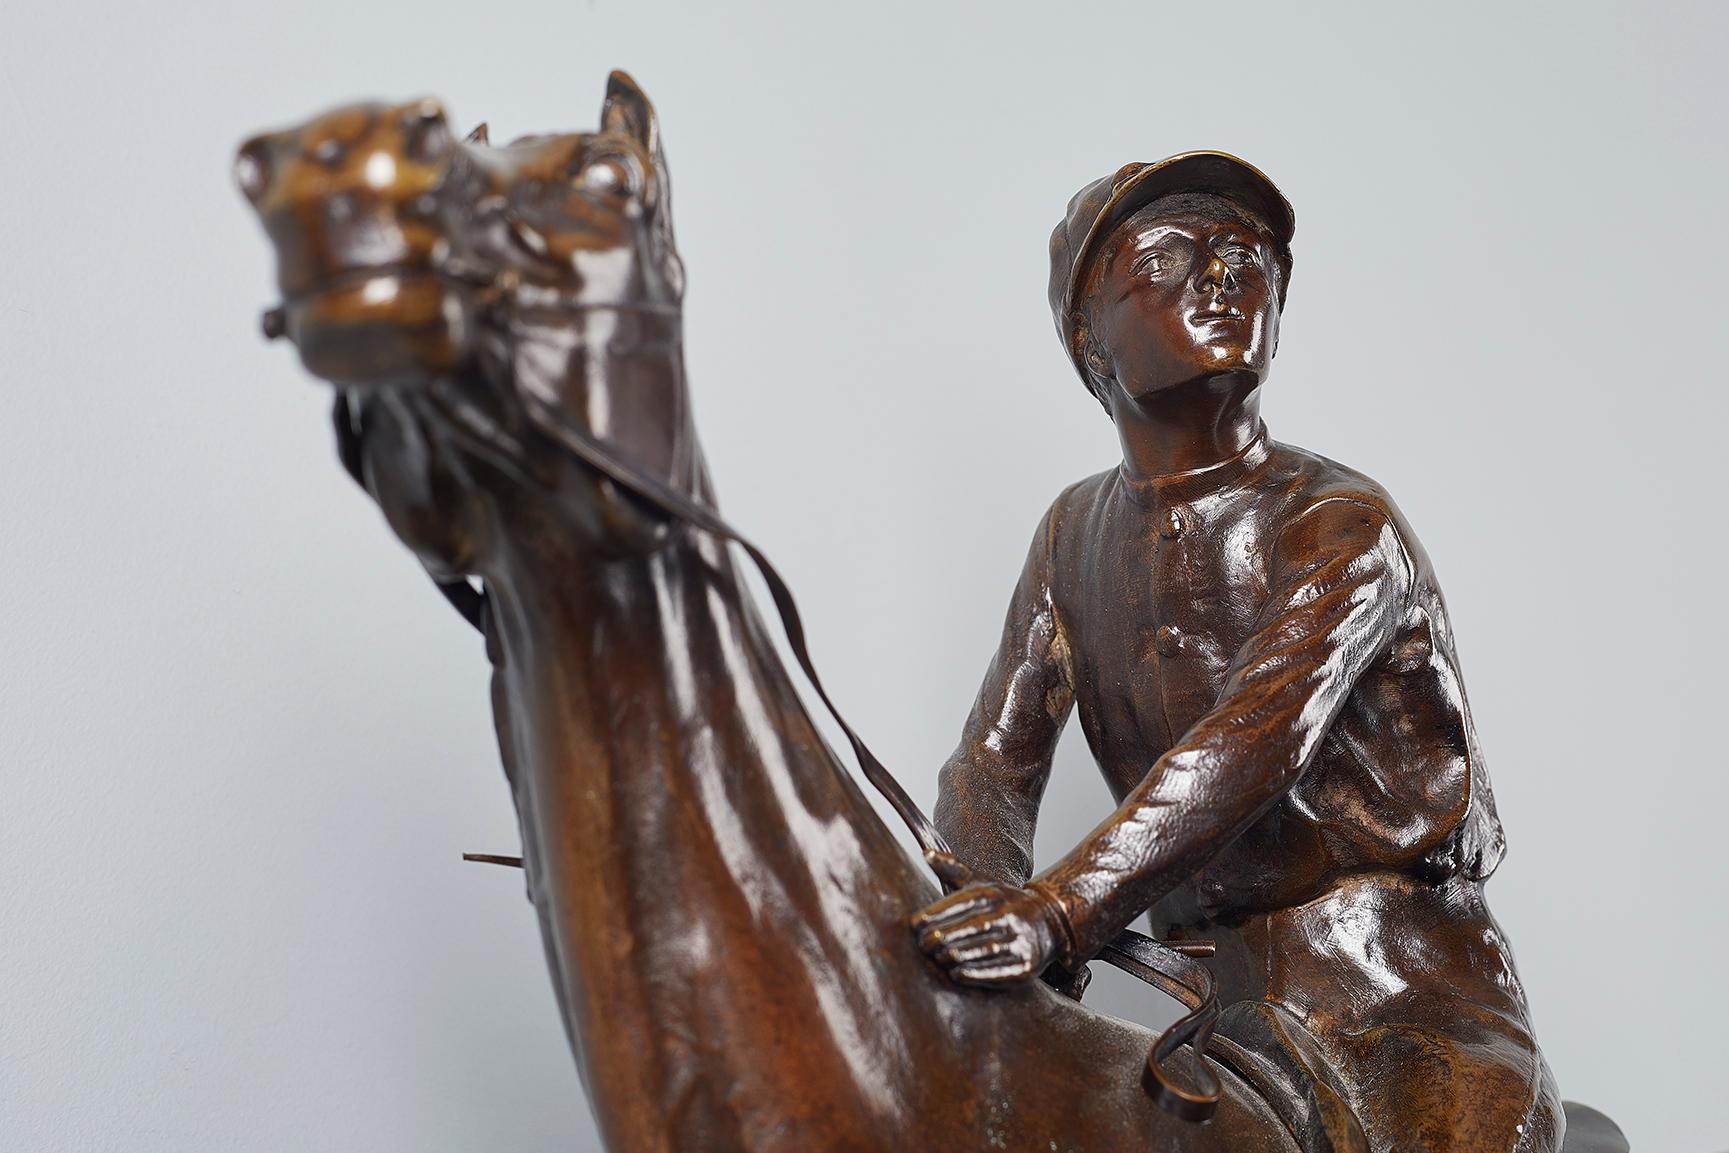 French Equestrian Bronze by Leon Bureau, 1866-1906